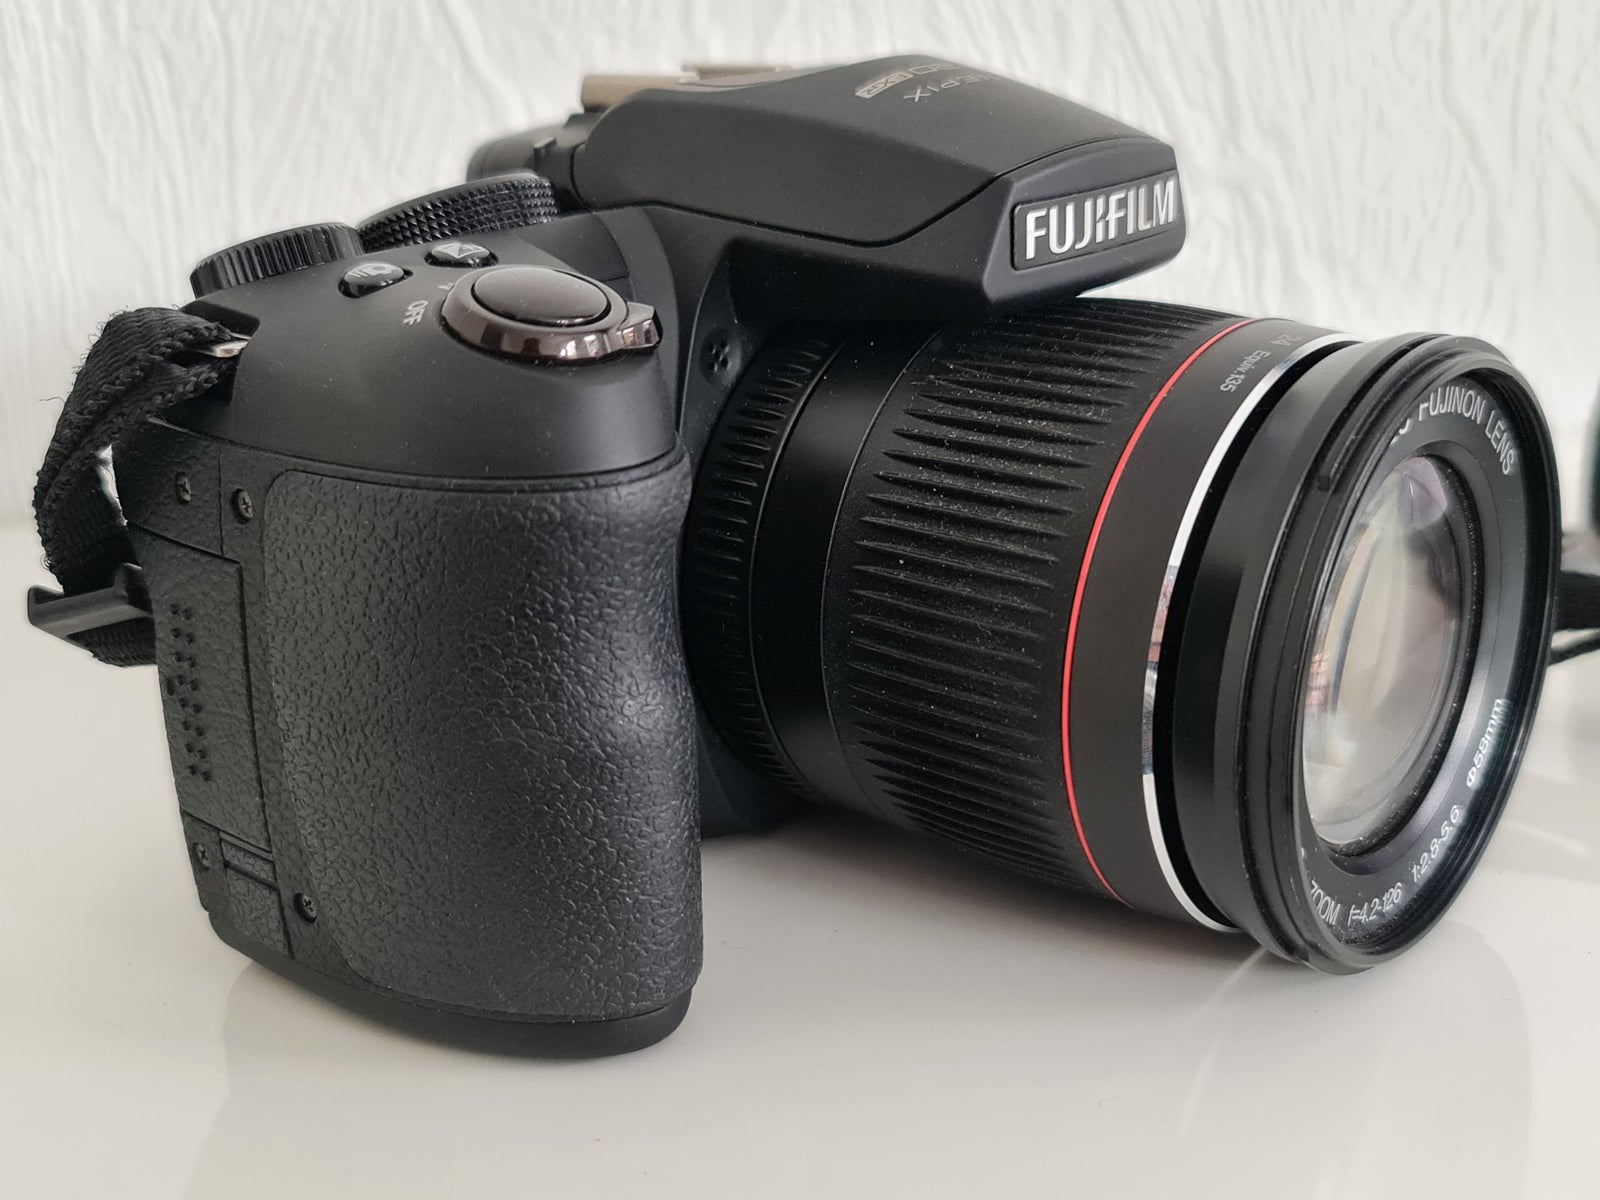 Fujifilm, FinePix HS20 EXR, 16 megapixels